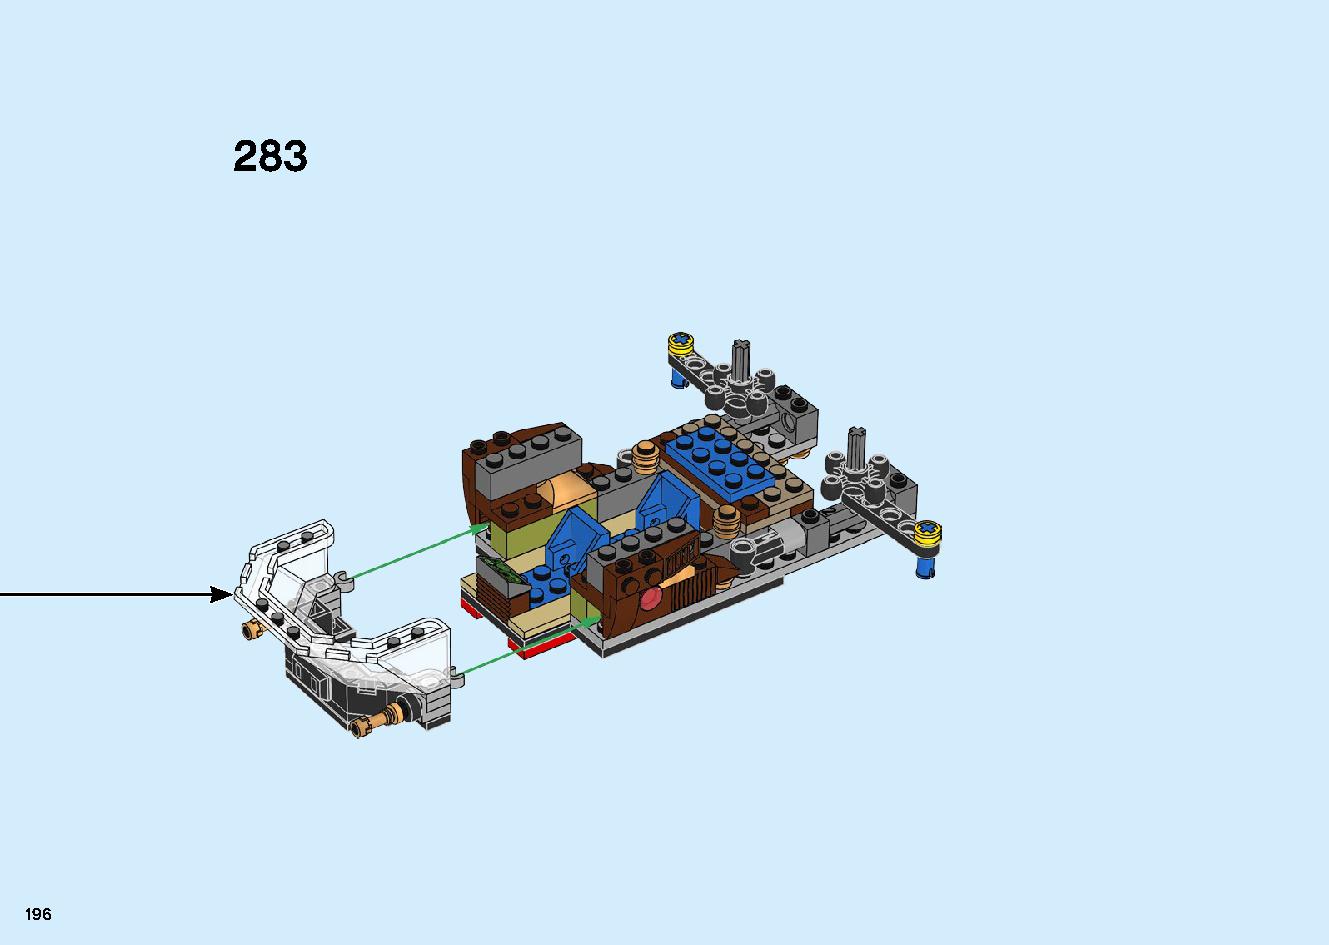 陸上戦艦バウンティ号 70677 レゴの商品情報 レゴの説明書・組立方法 196 page